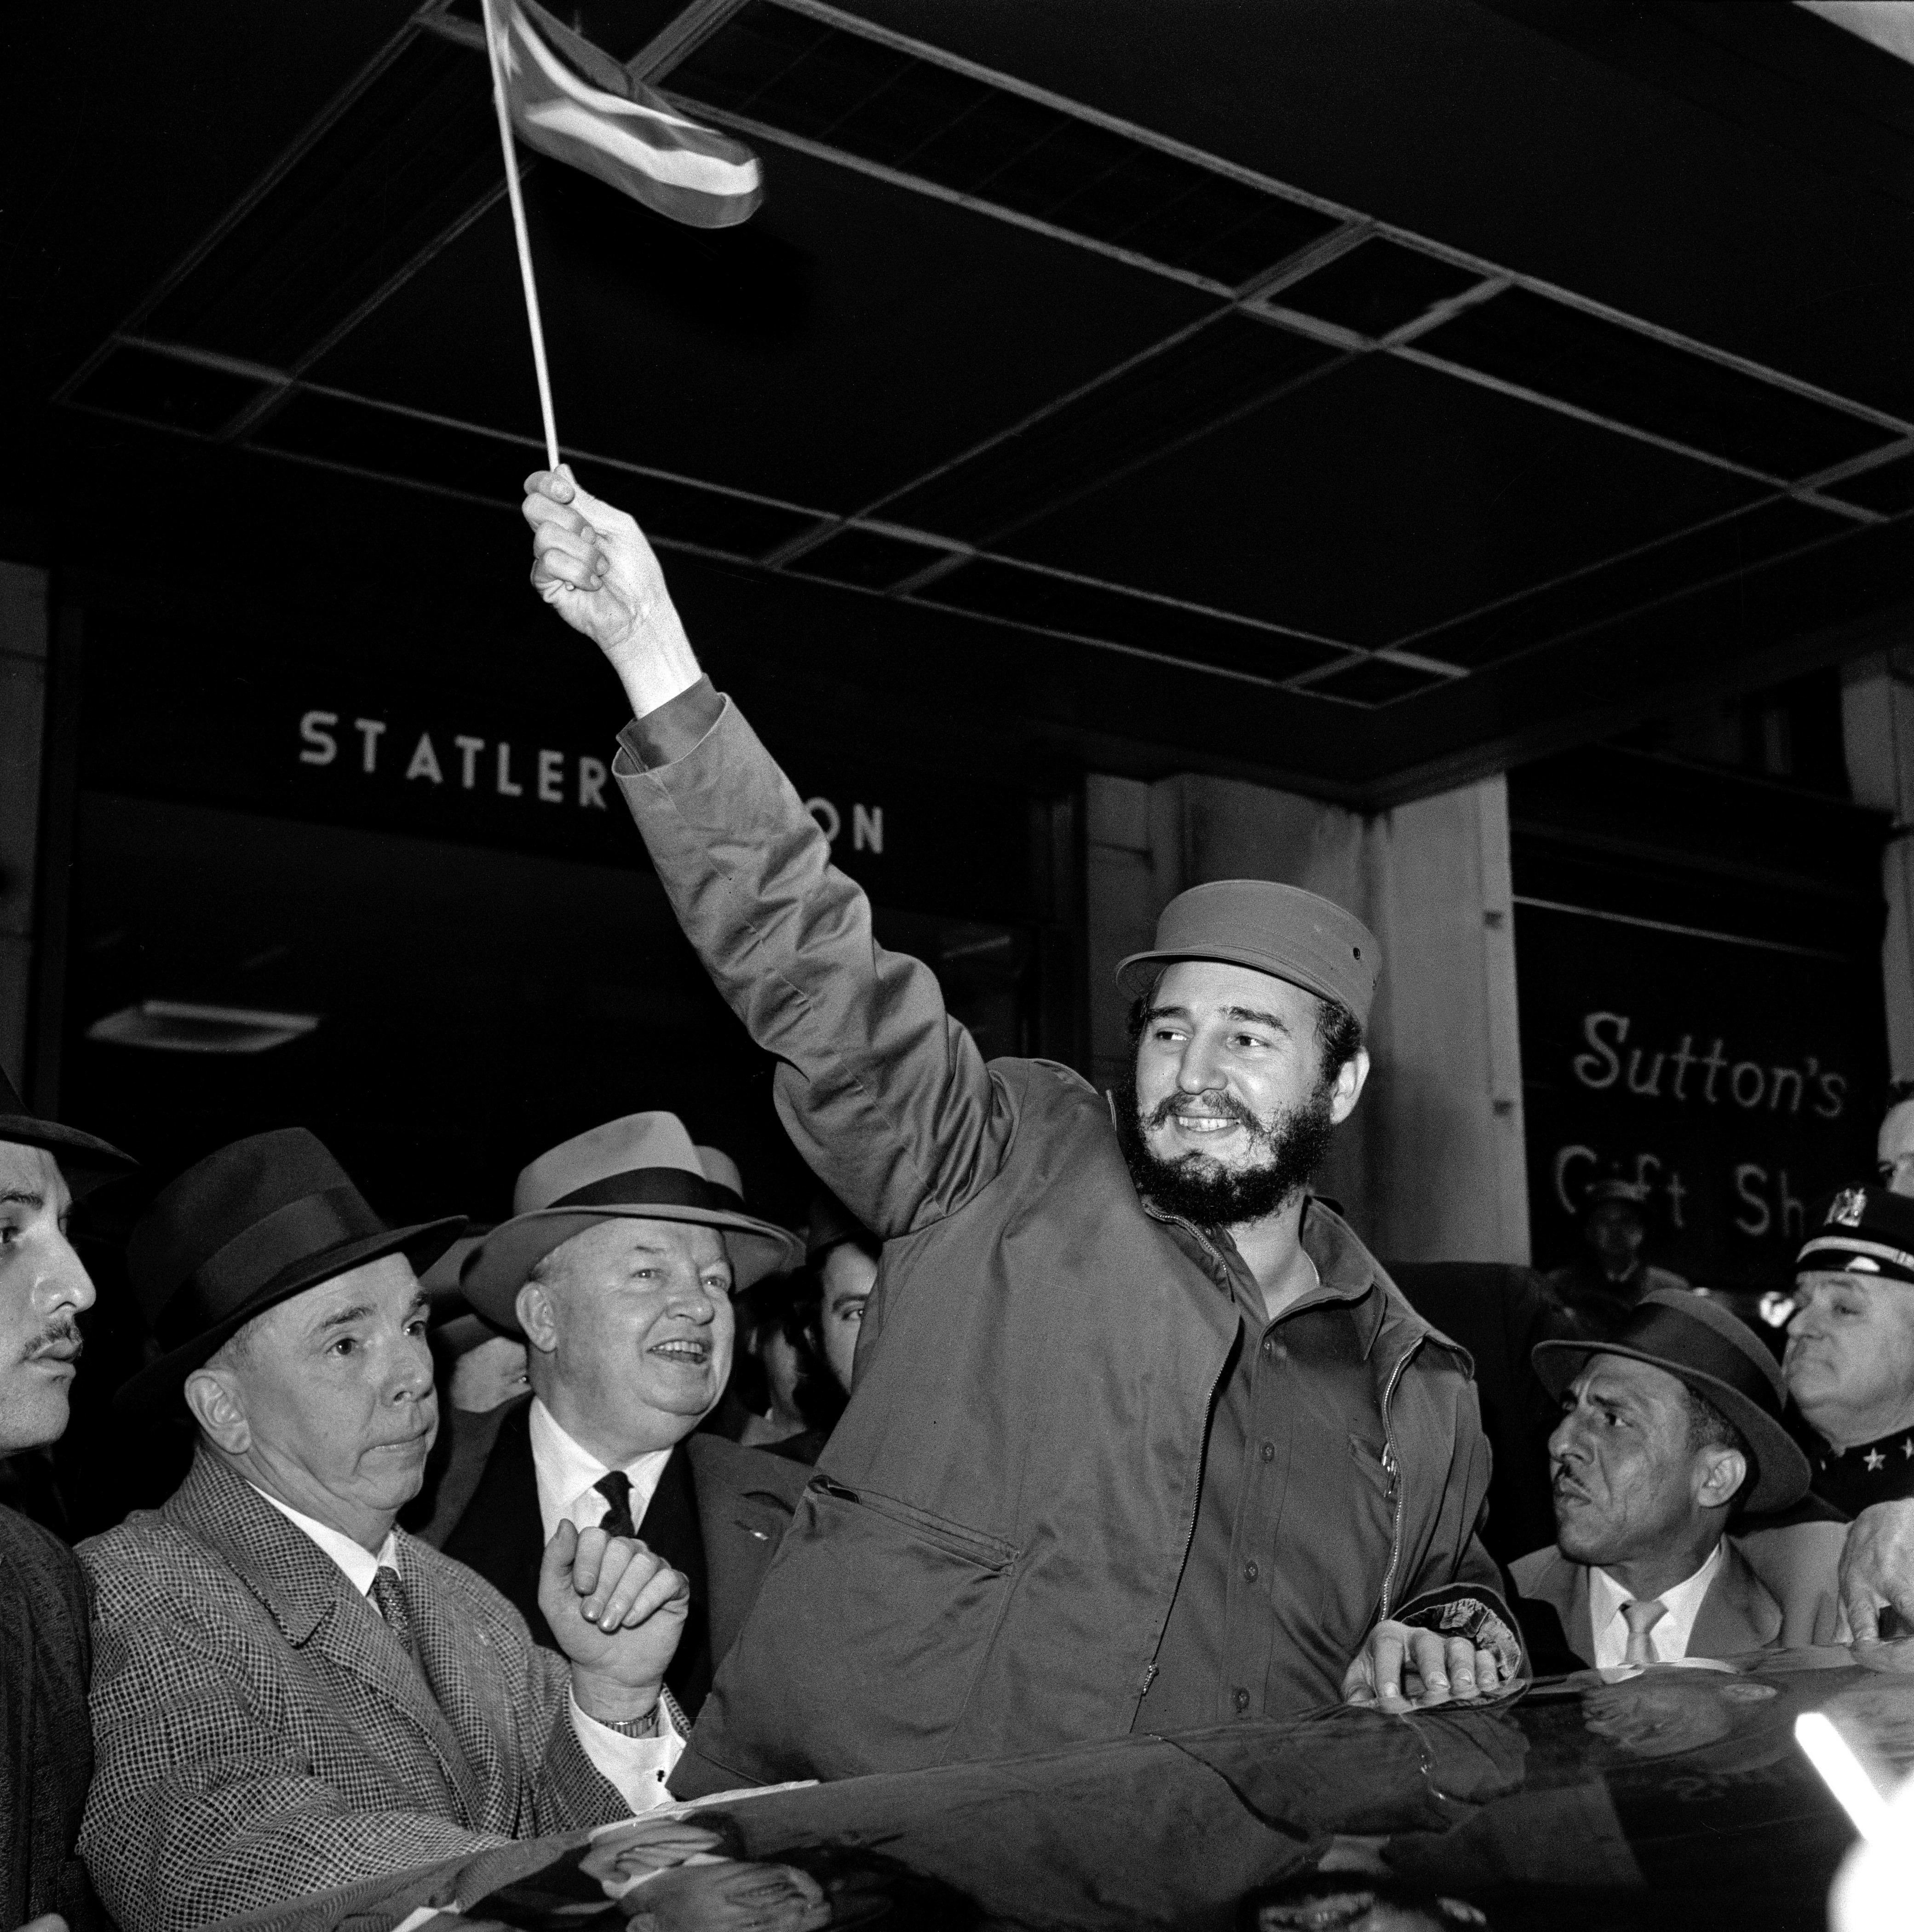 Il leader cubano a New York il 21 aprile 1959. Tre mesi dopo la caduta del regime di Batista e la conseguente presa del potere, Casto visita Washington e New York